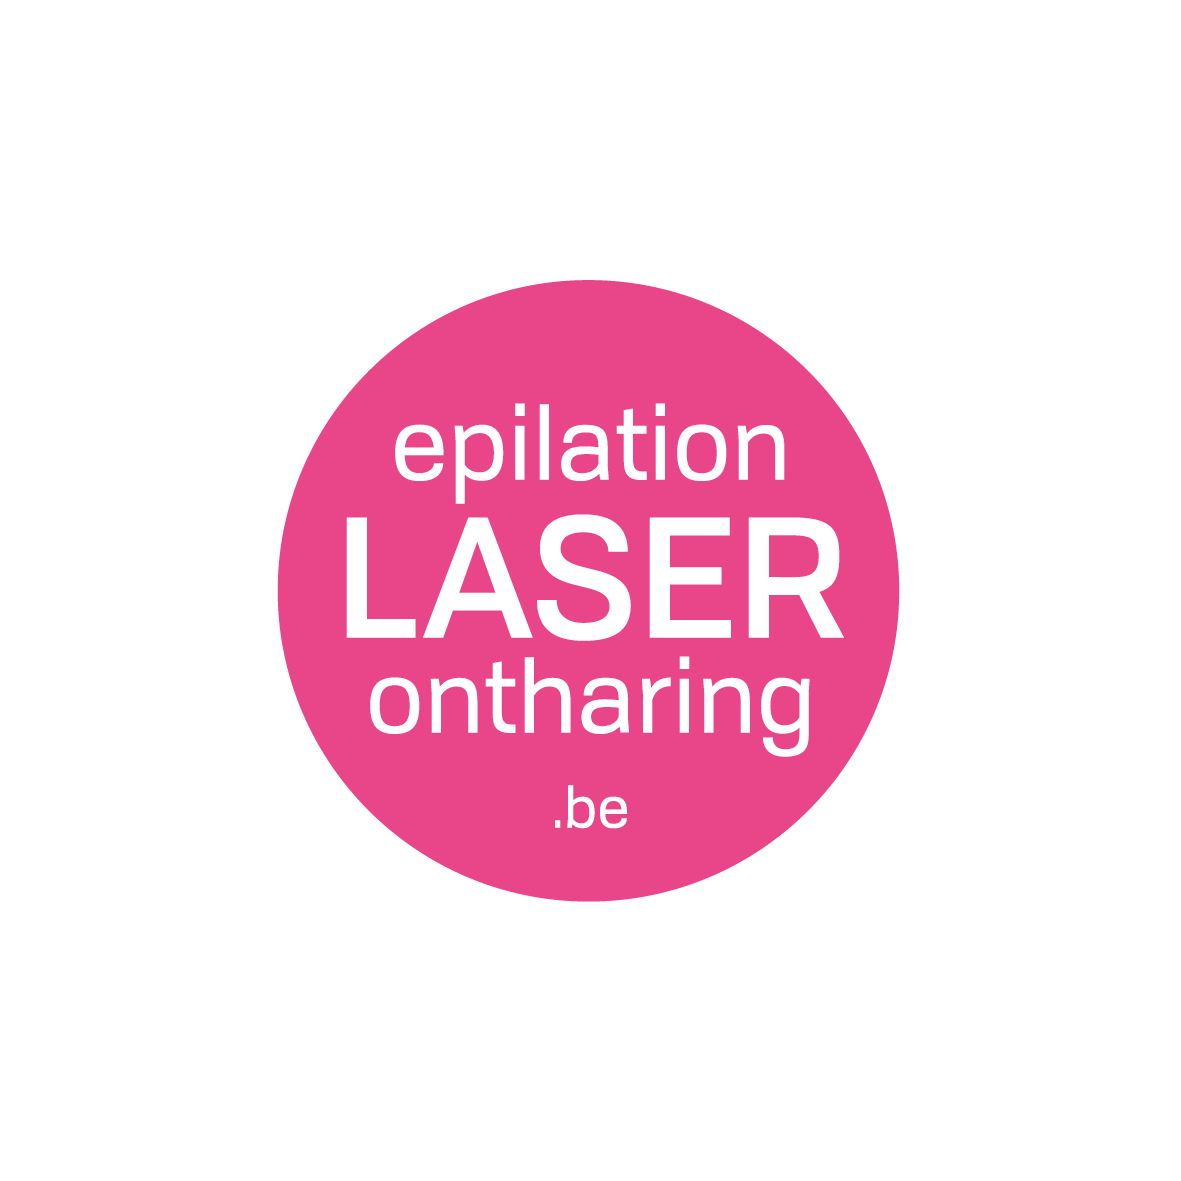 Dermalaser NV - Laserontharing & Epilationlaser